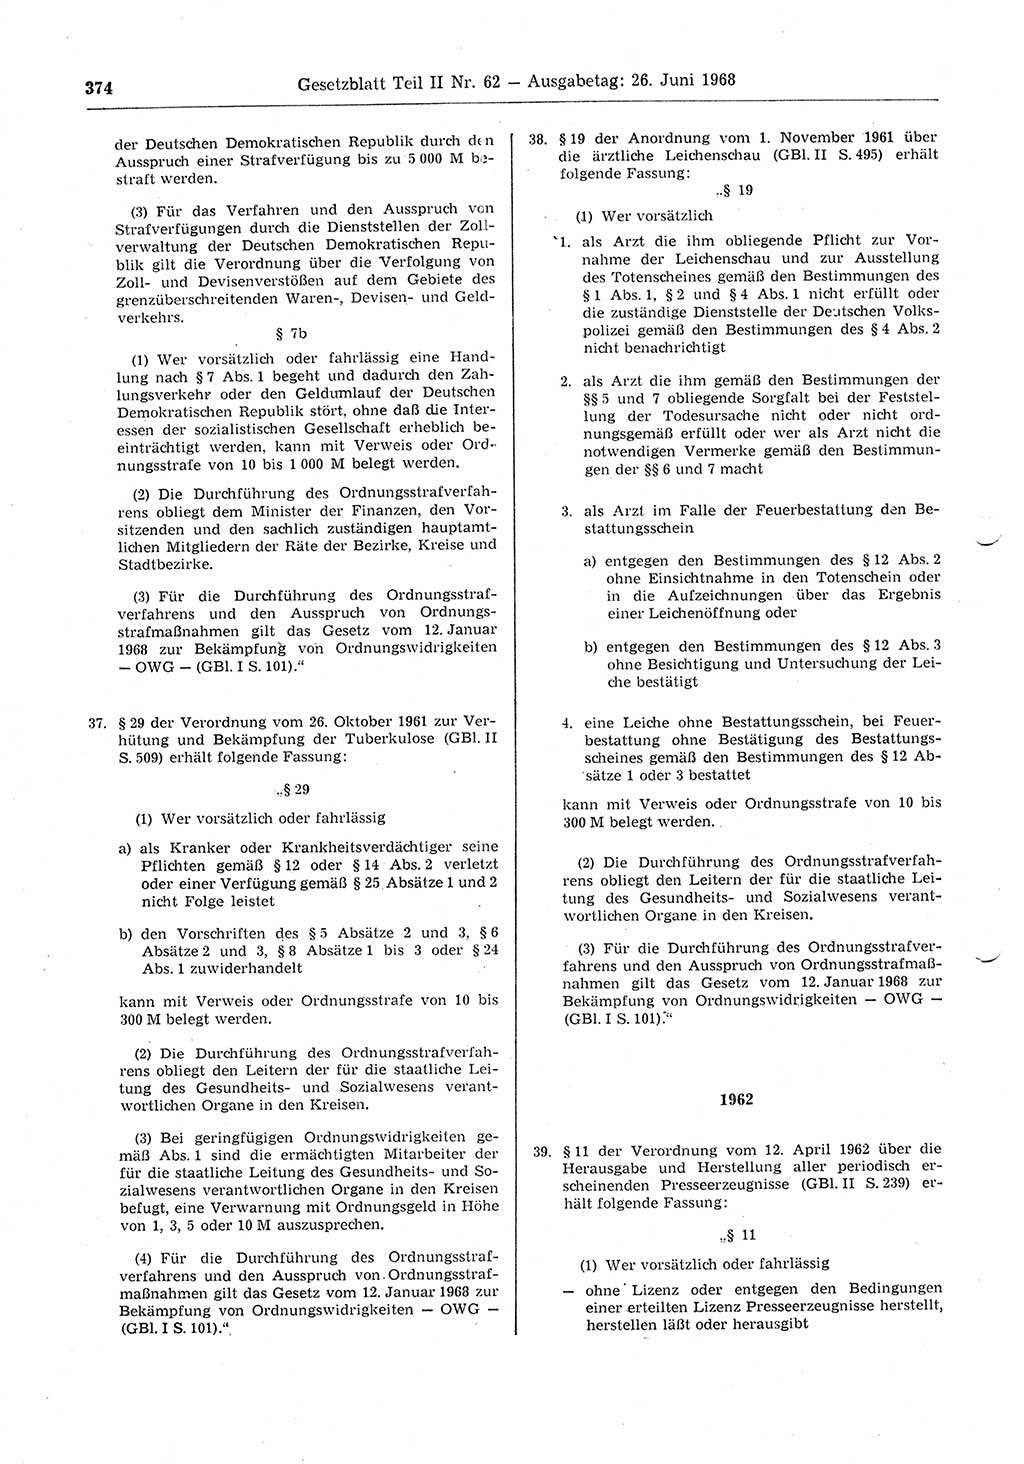 Gesetzblatt (GBl.) der Deutschen Demokratischen Republik (DDR) Teil ⅠⅠ 1968, Seite 374 (GBl. DDR ⅠⅠ 1968, S. 374)